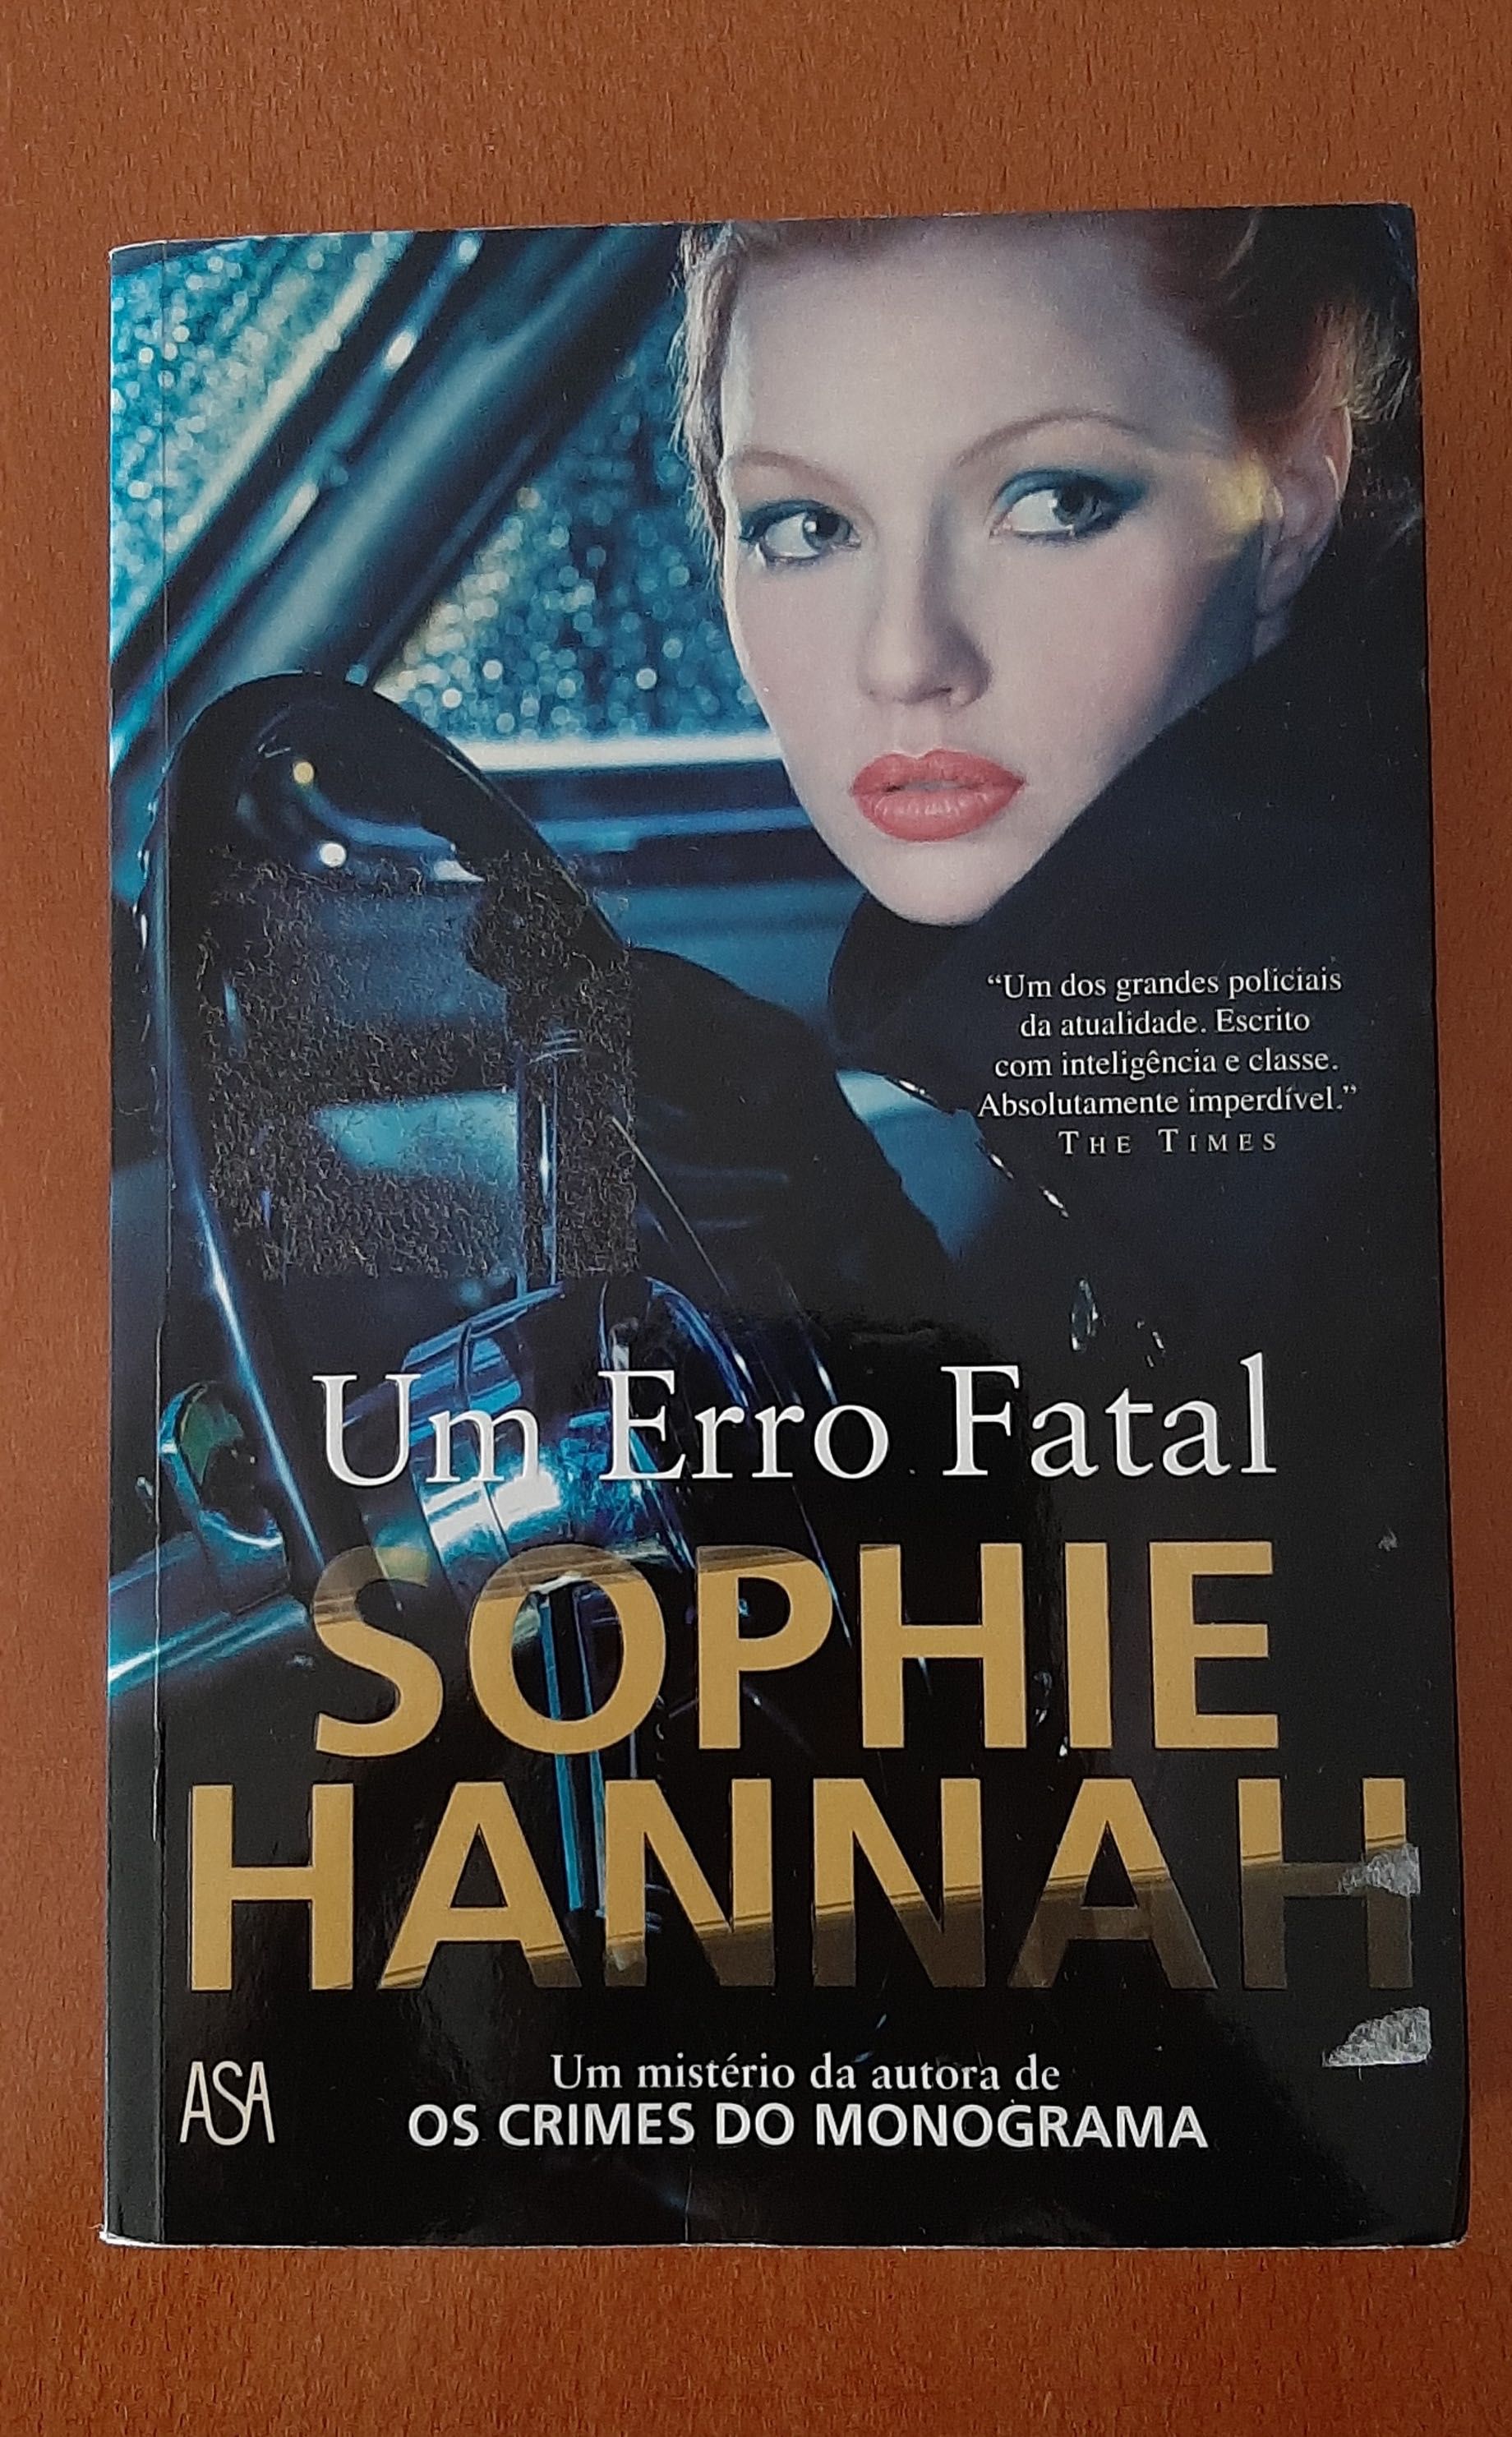 Livro "Um Erro Fatal" de Sophie Hannah